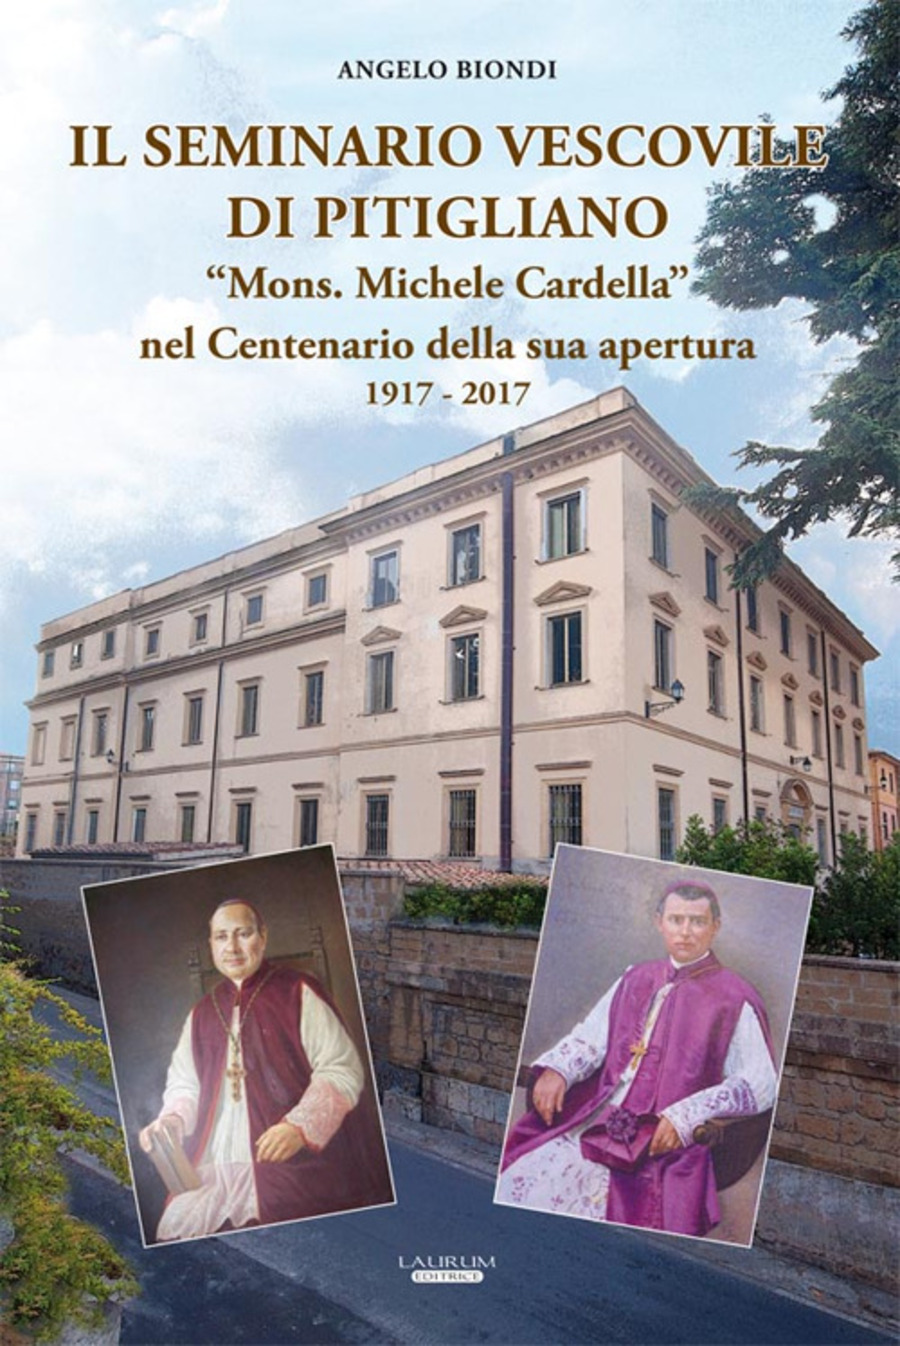 Il seminario vescovile di Pitigliano «Mons. Michele Cardella» nel centenario della sua apertura 1917-2017